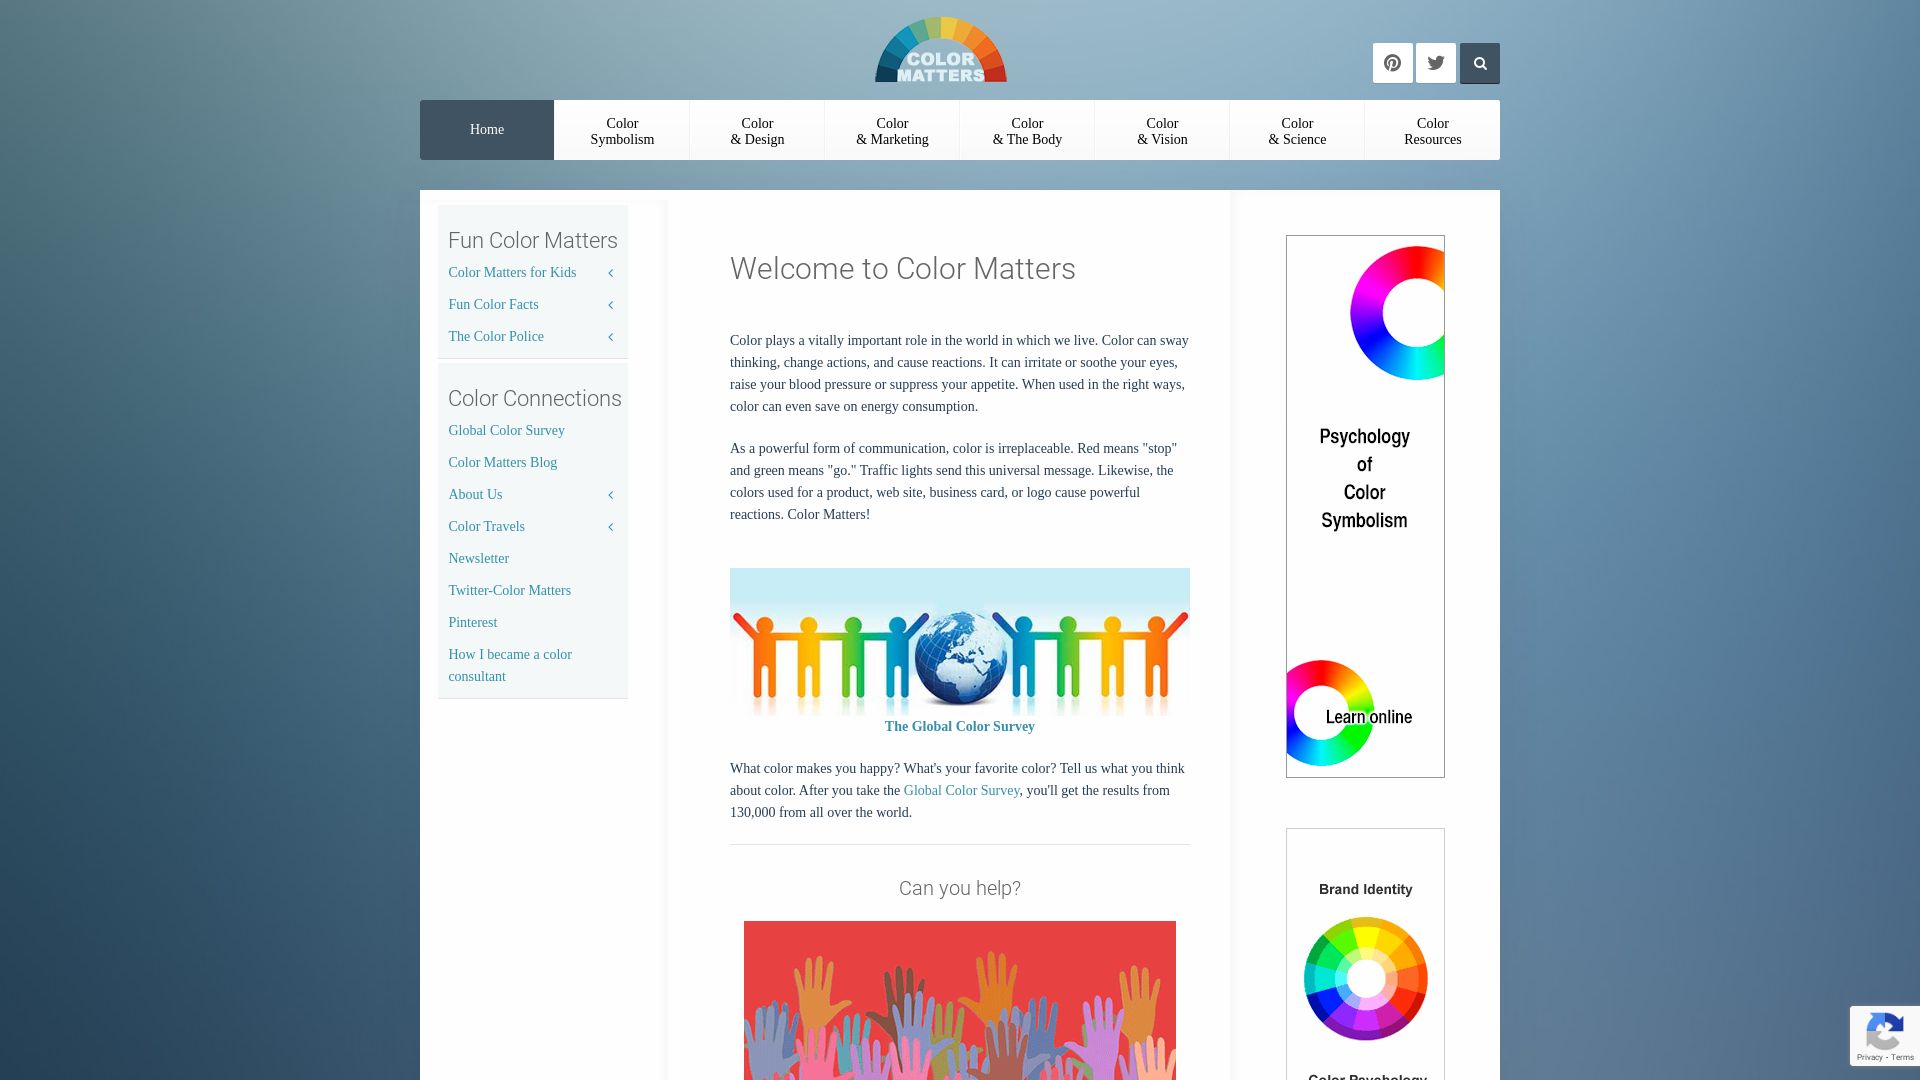 网站状态 colormatters.com 是  在线的